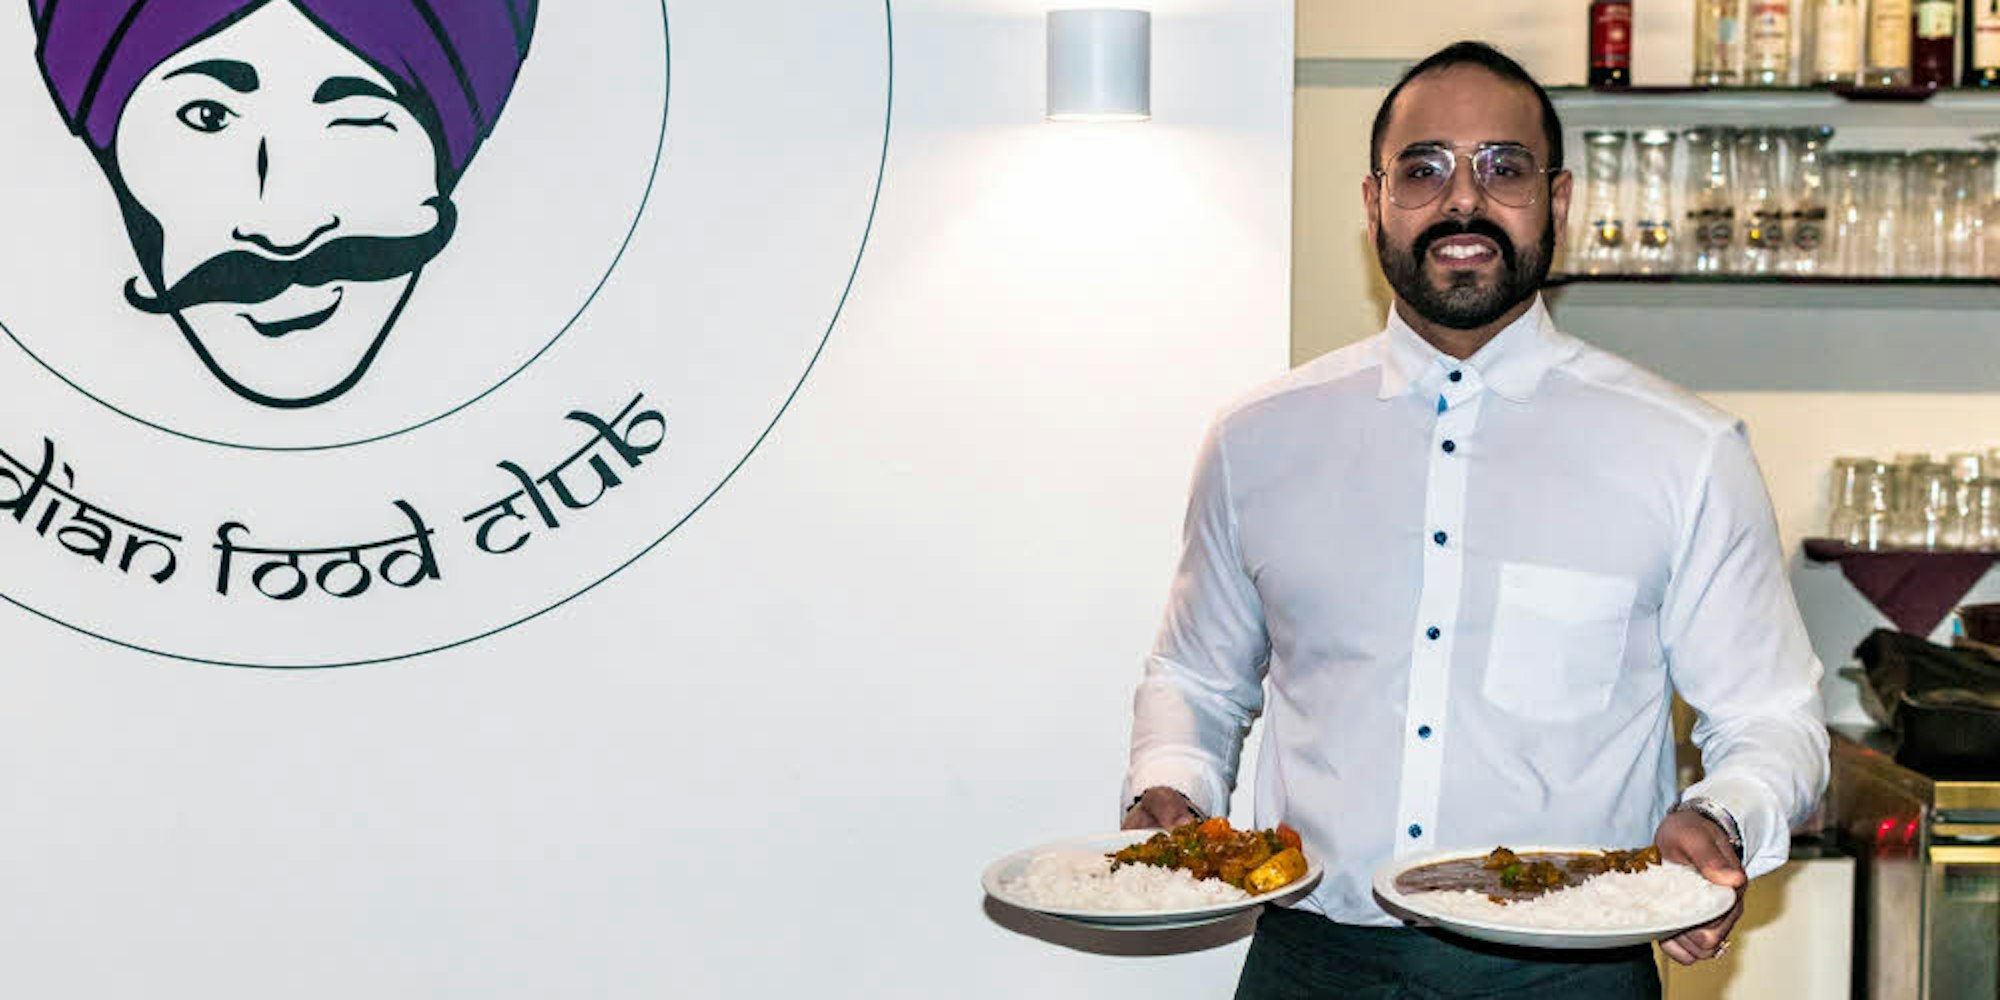 Ein neues Konzept hat Sarvraj Hundal im Restaurant seiner Eltern eingeführt.